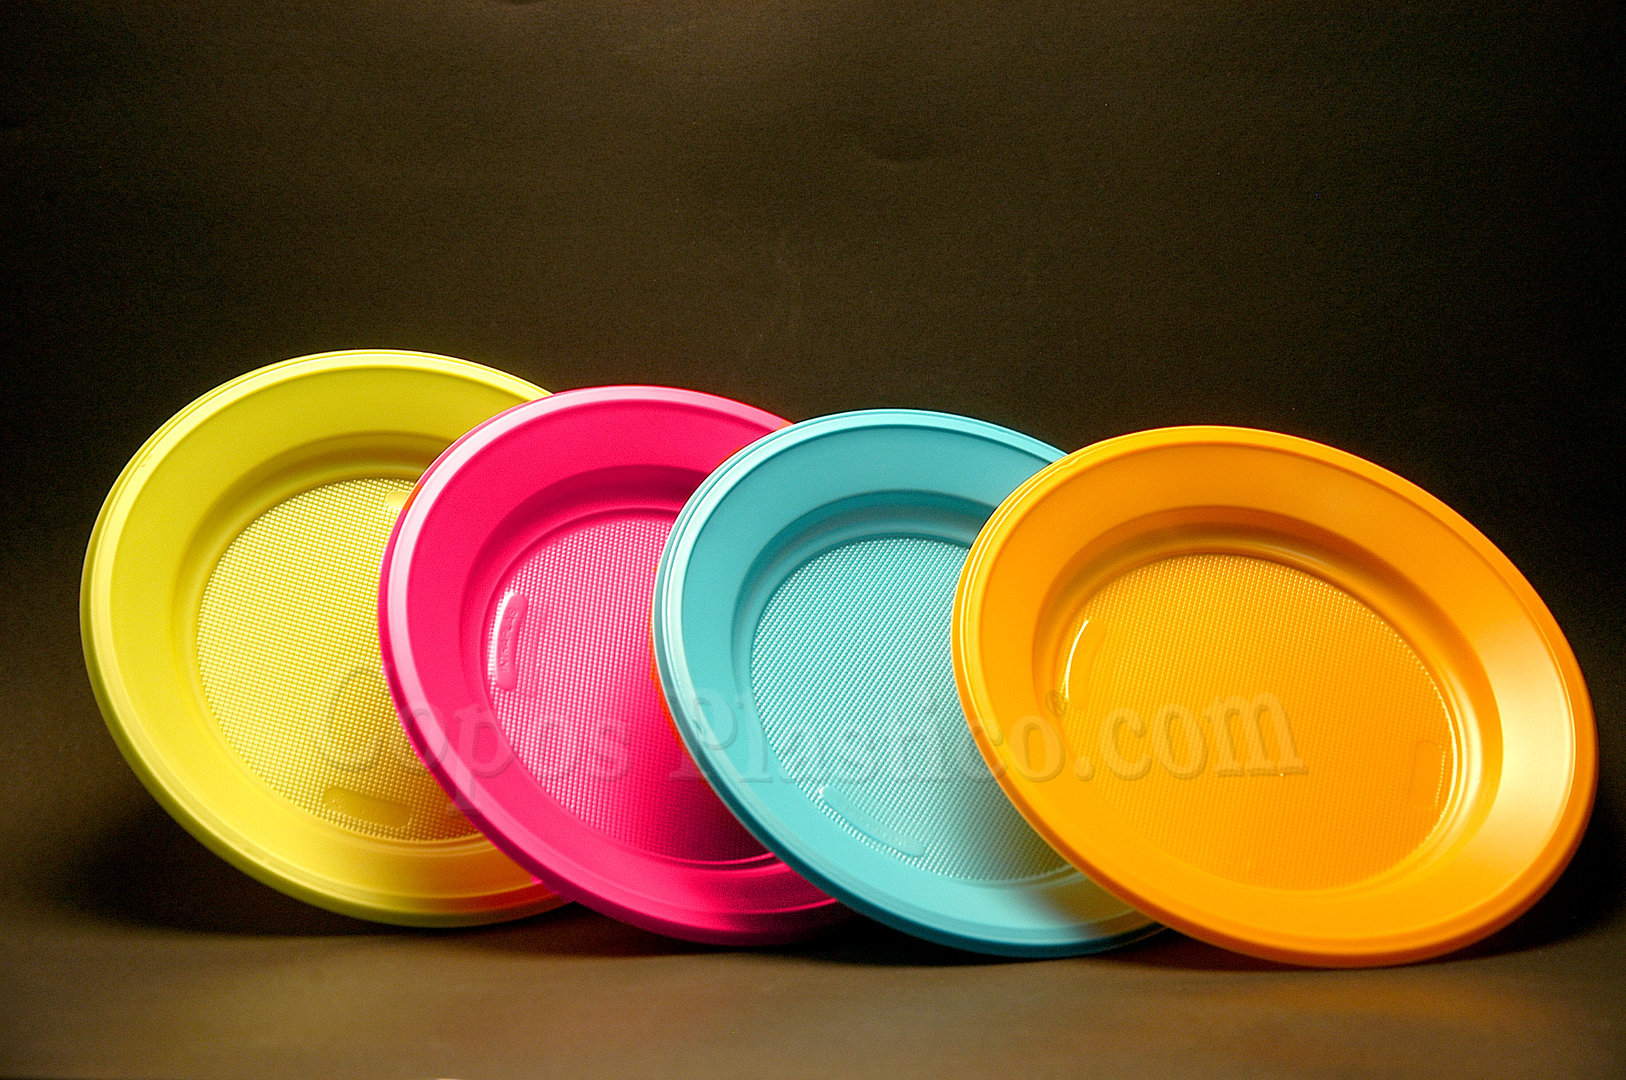 Platos Plásticos Hondos Irrompibles De Colores X 100unidades - $ 54.900